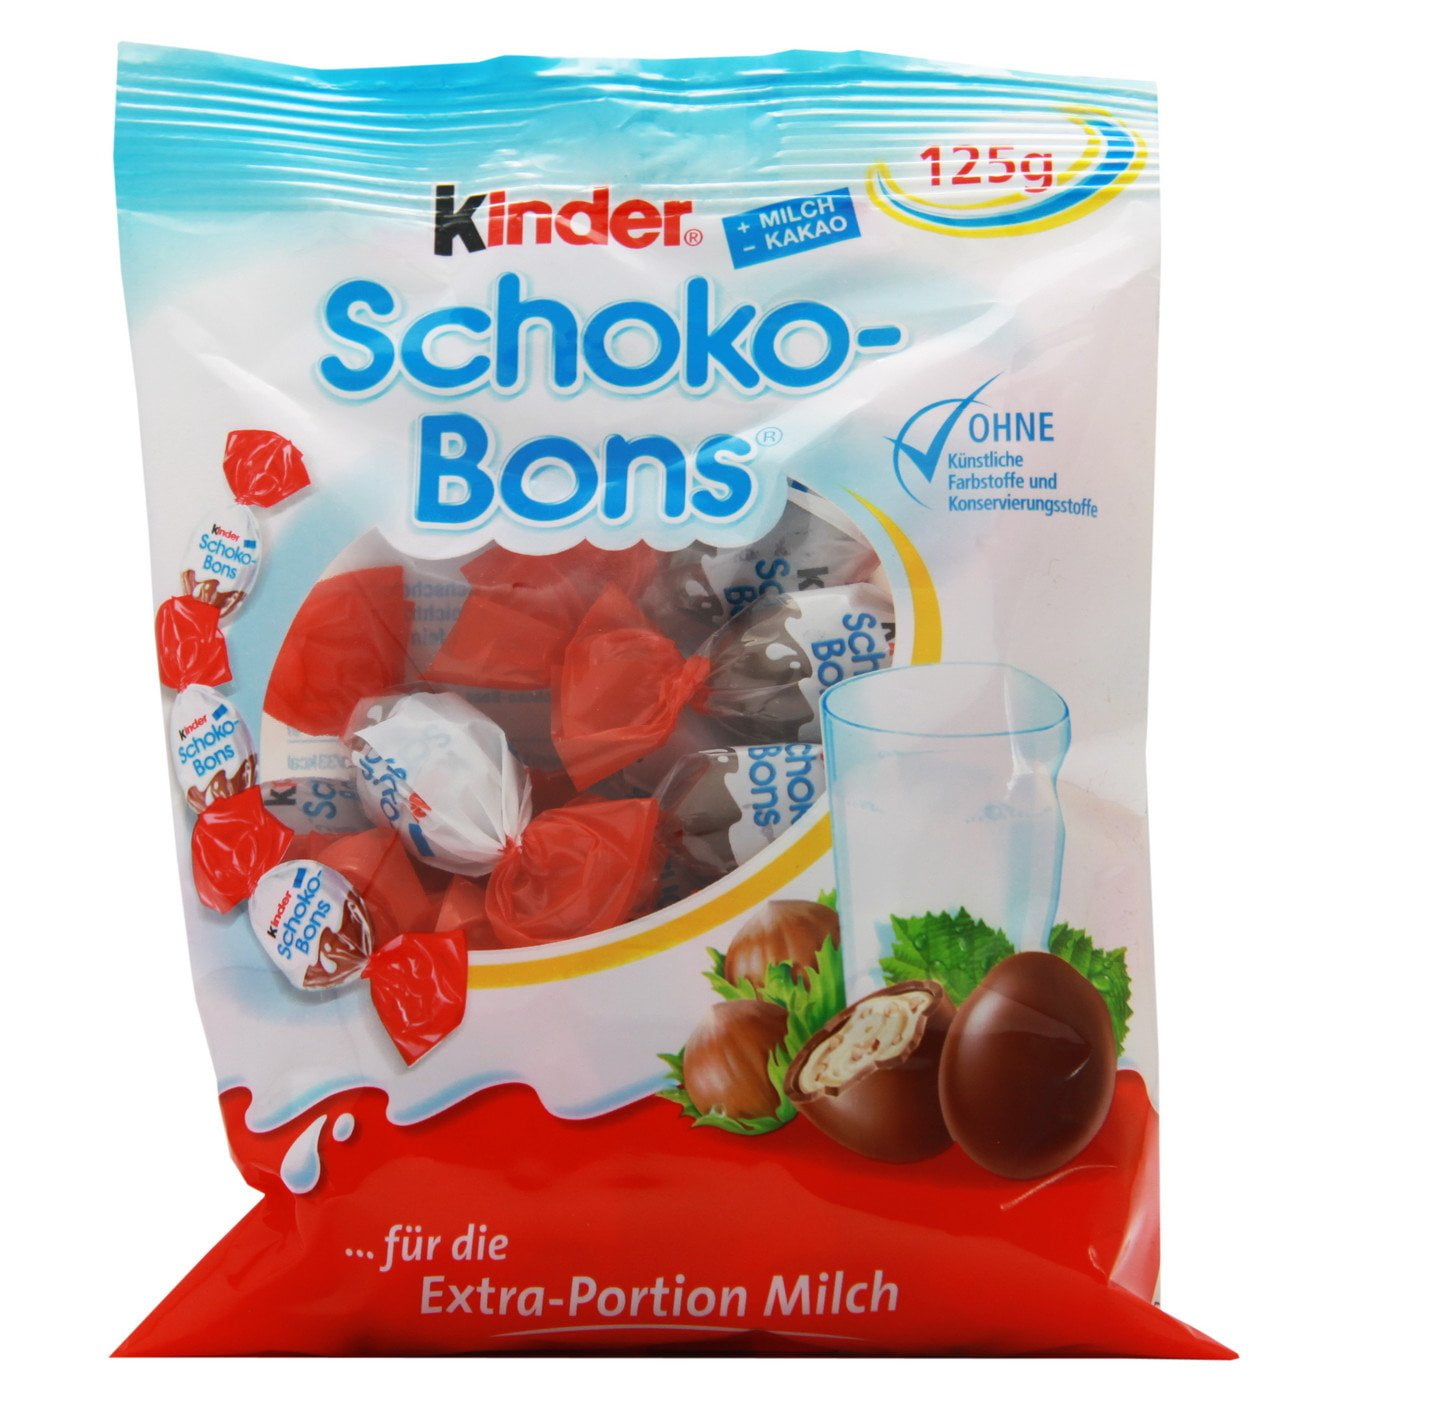 Kinder Schoko-Bons - Kinder France